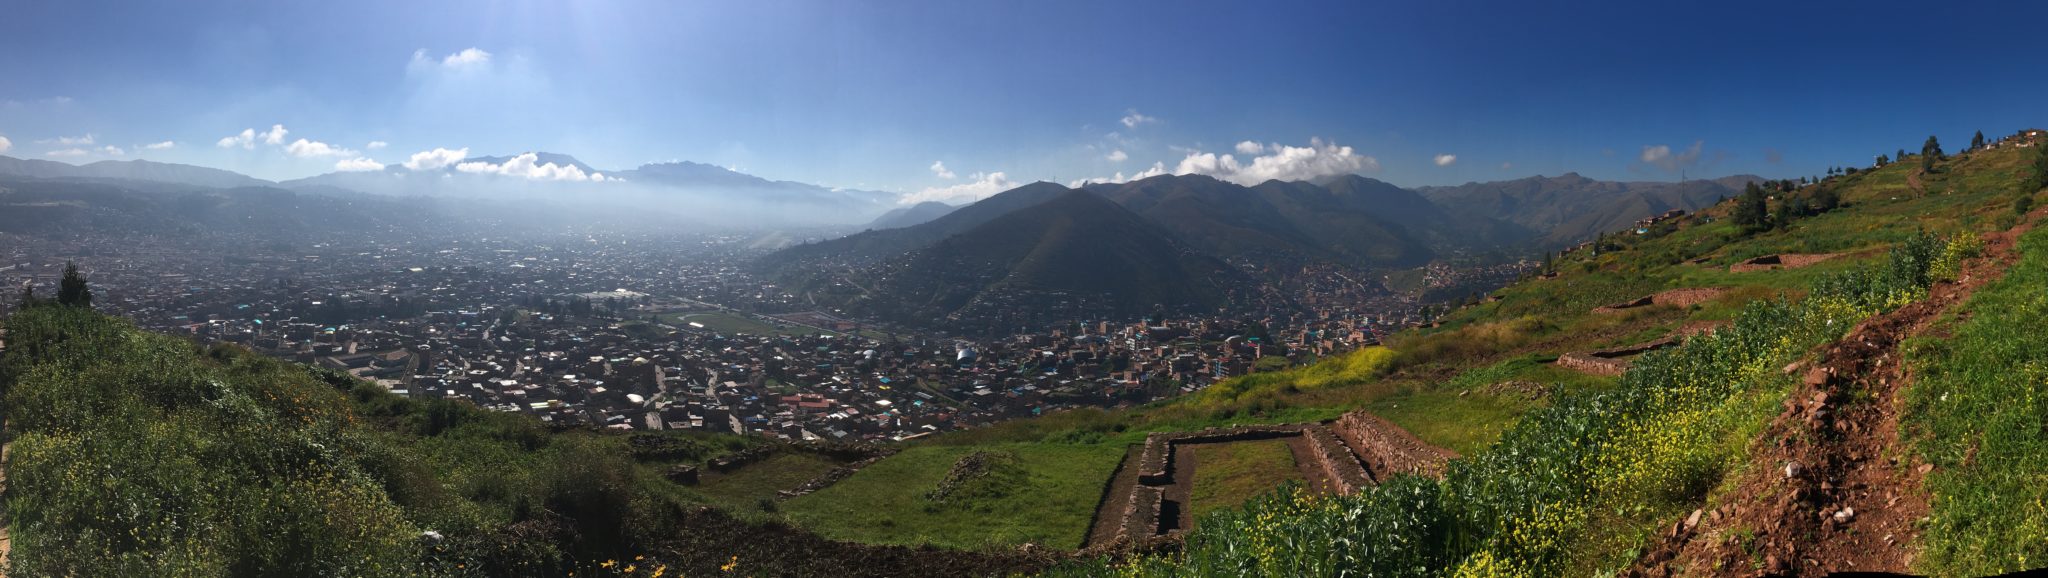 ペルー, クスコ, 遺跡